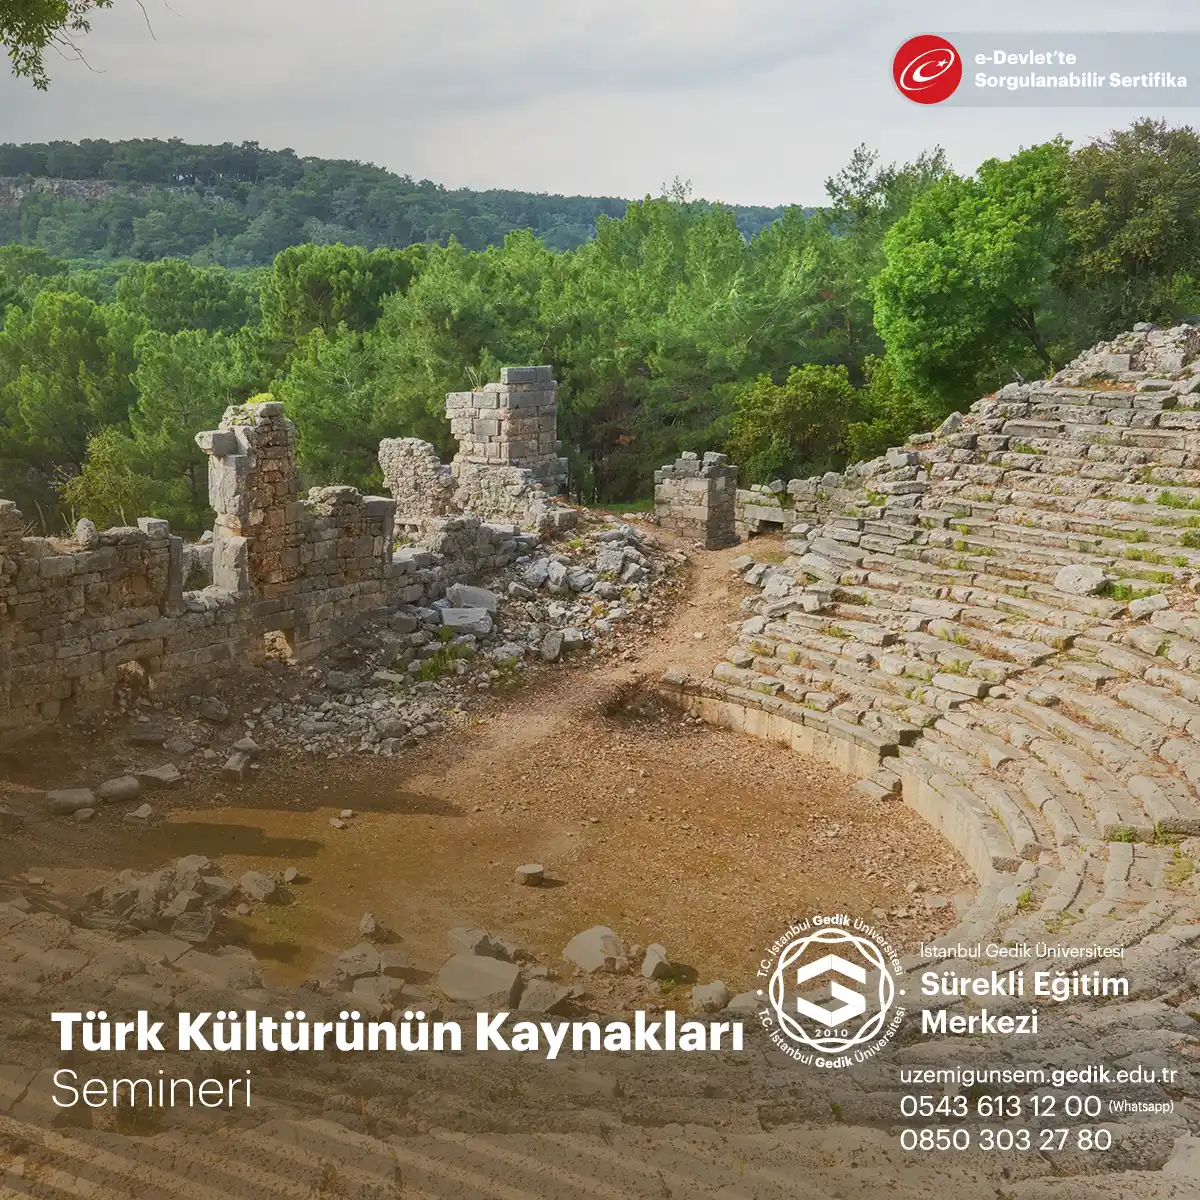 Türk kültürü, binlerce yıllık tarihi boyunca farklı medeniyetlerin etkisiyle oluşmuş zengin bir kültürel mirasa sahiptir.